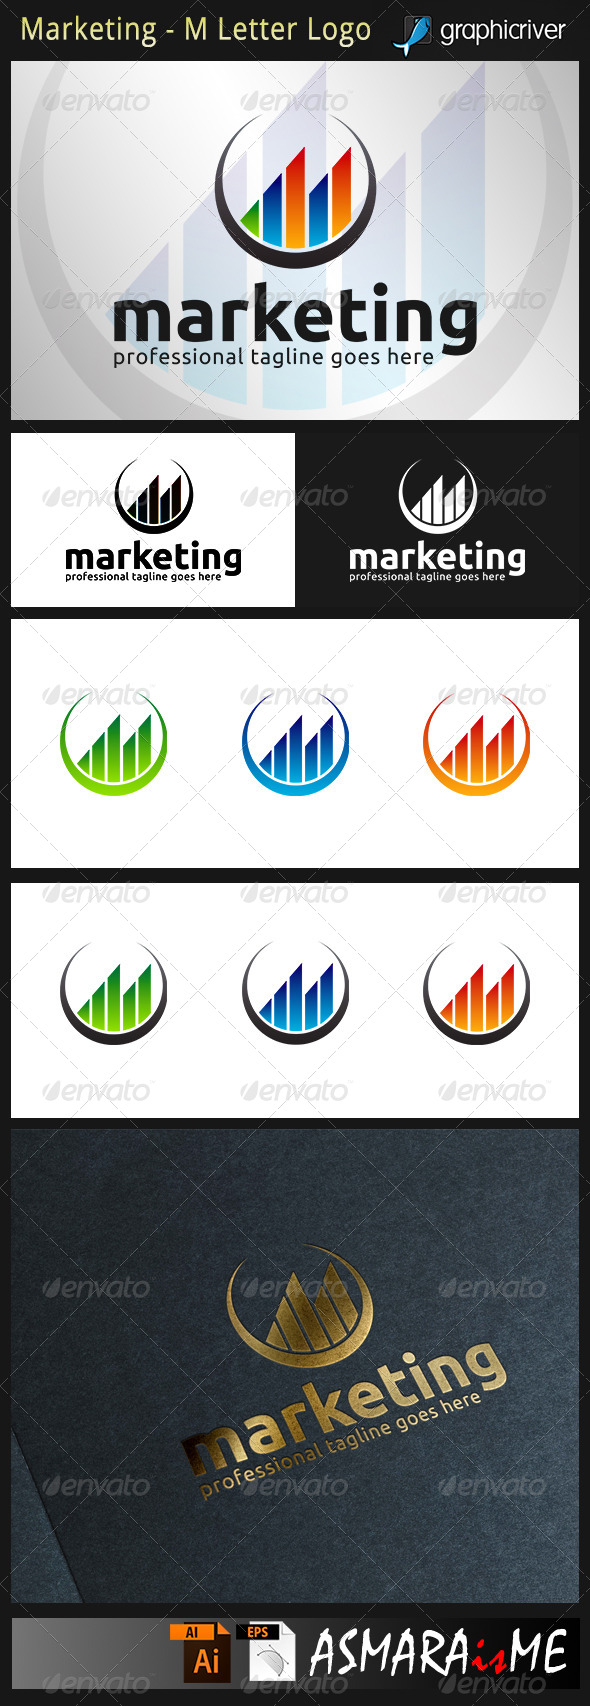 Marketing - M Letter Logo